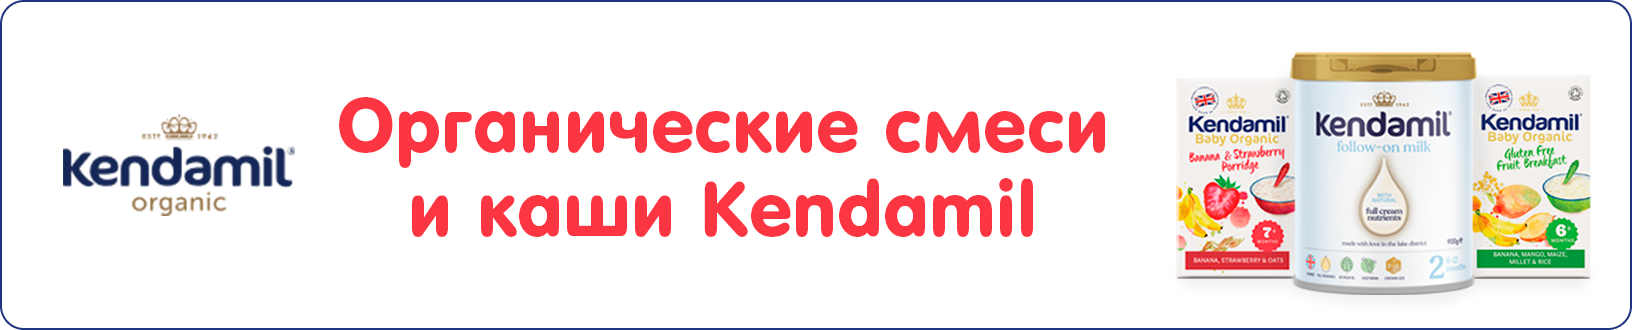 Органические смеси и каши британского бренда Kendamil